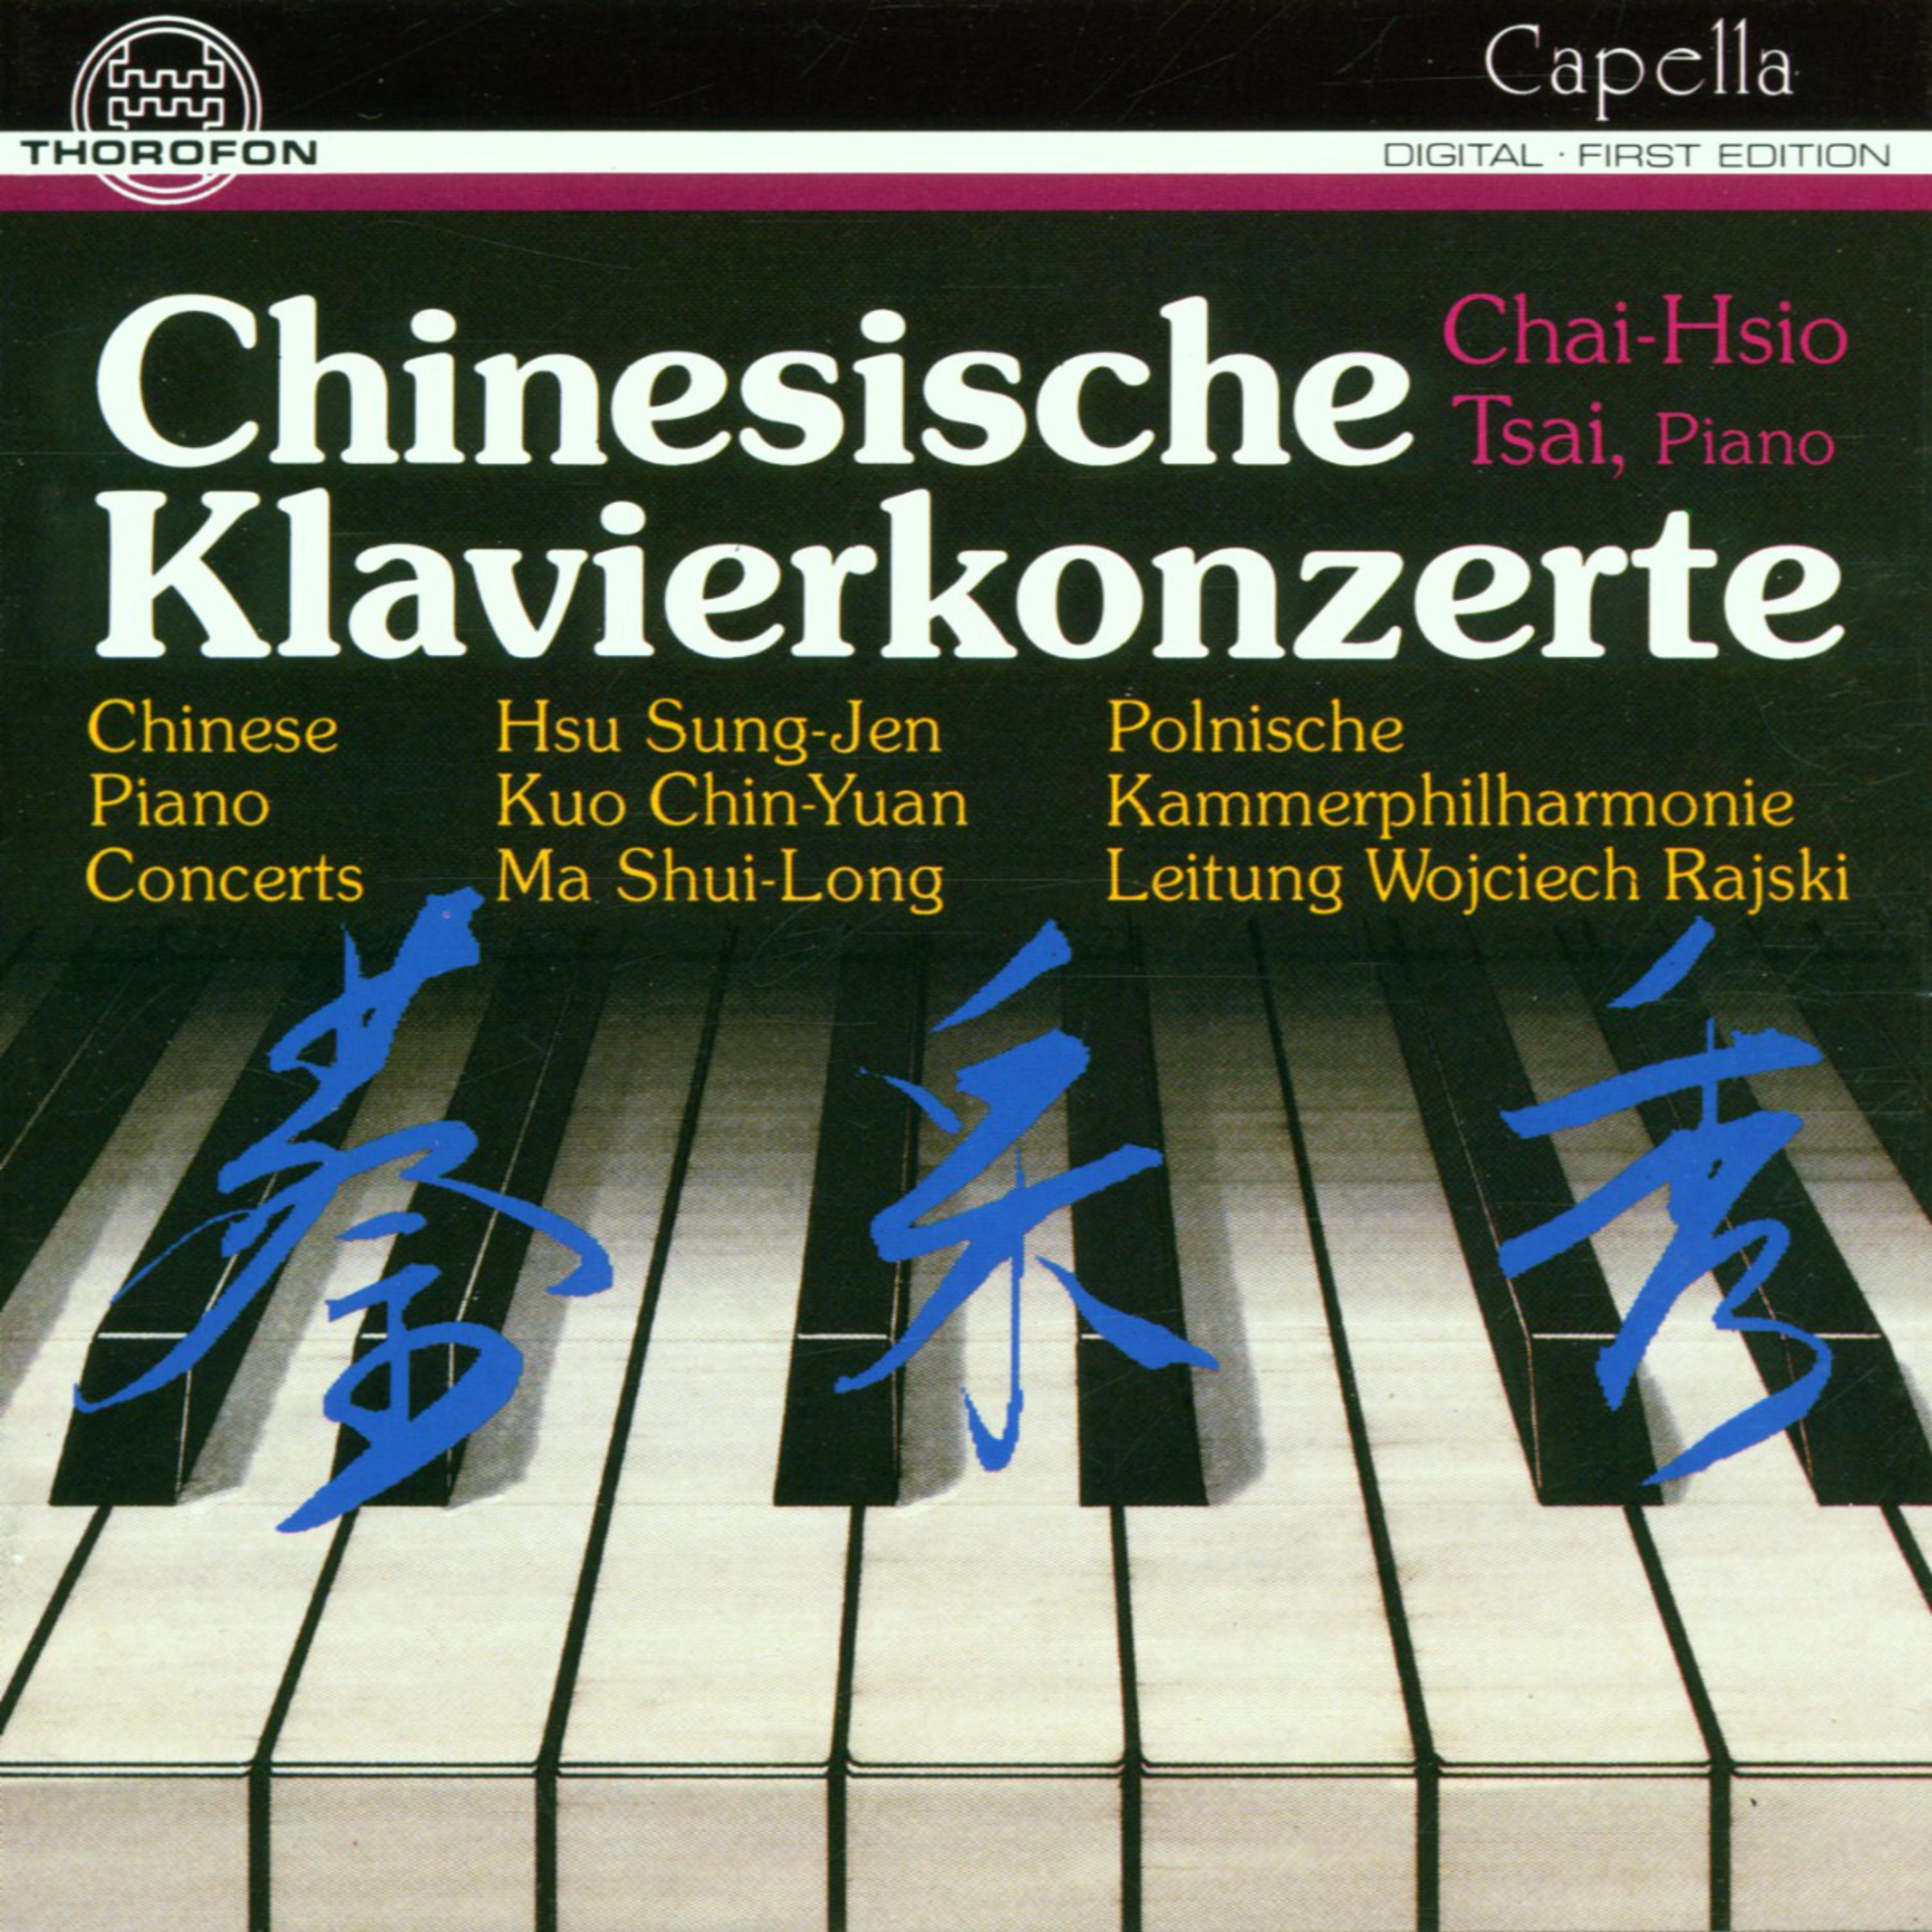 Concertino for Piano and Orchestra: III. Allegro